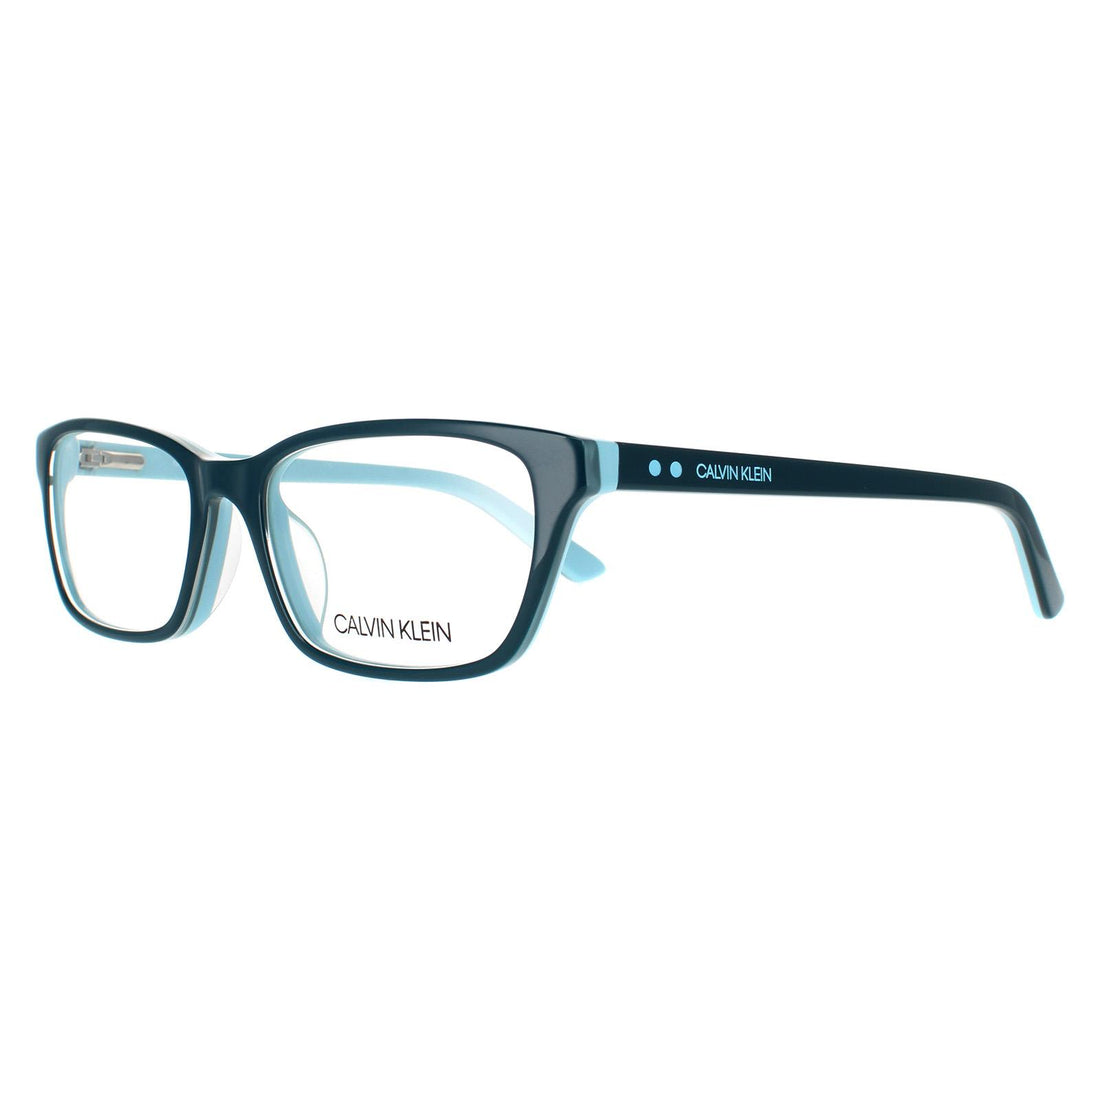 Calvin Klein Glasses Frames CK18541 436 Teal Light Blue Women